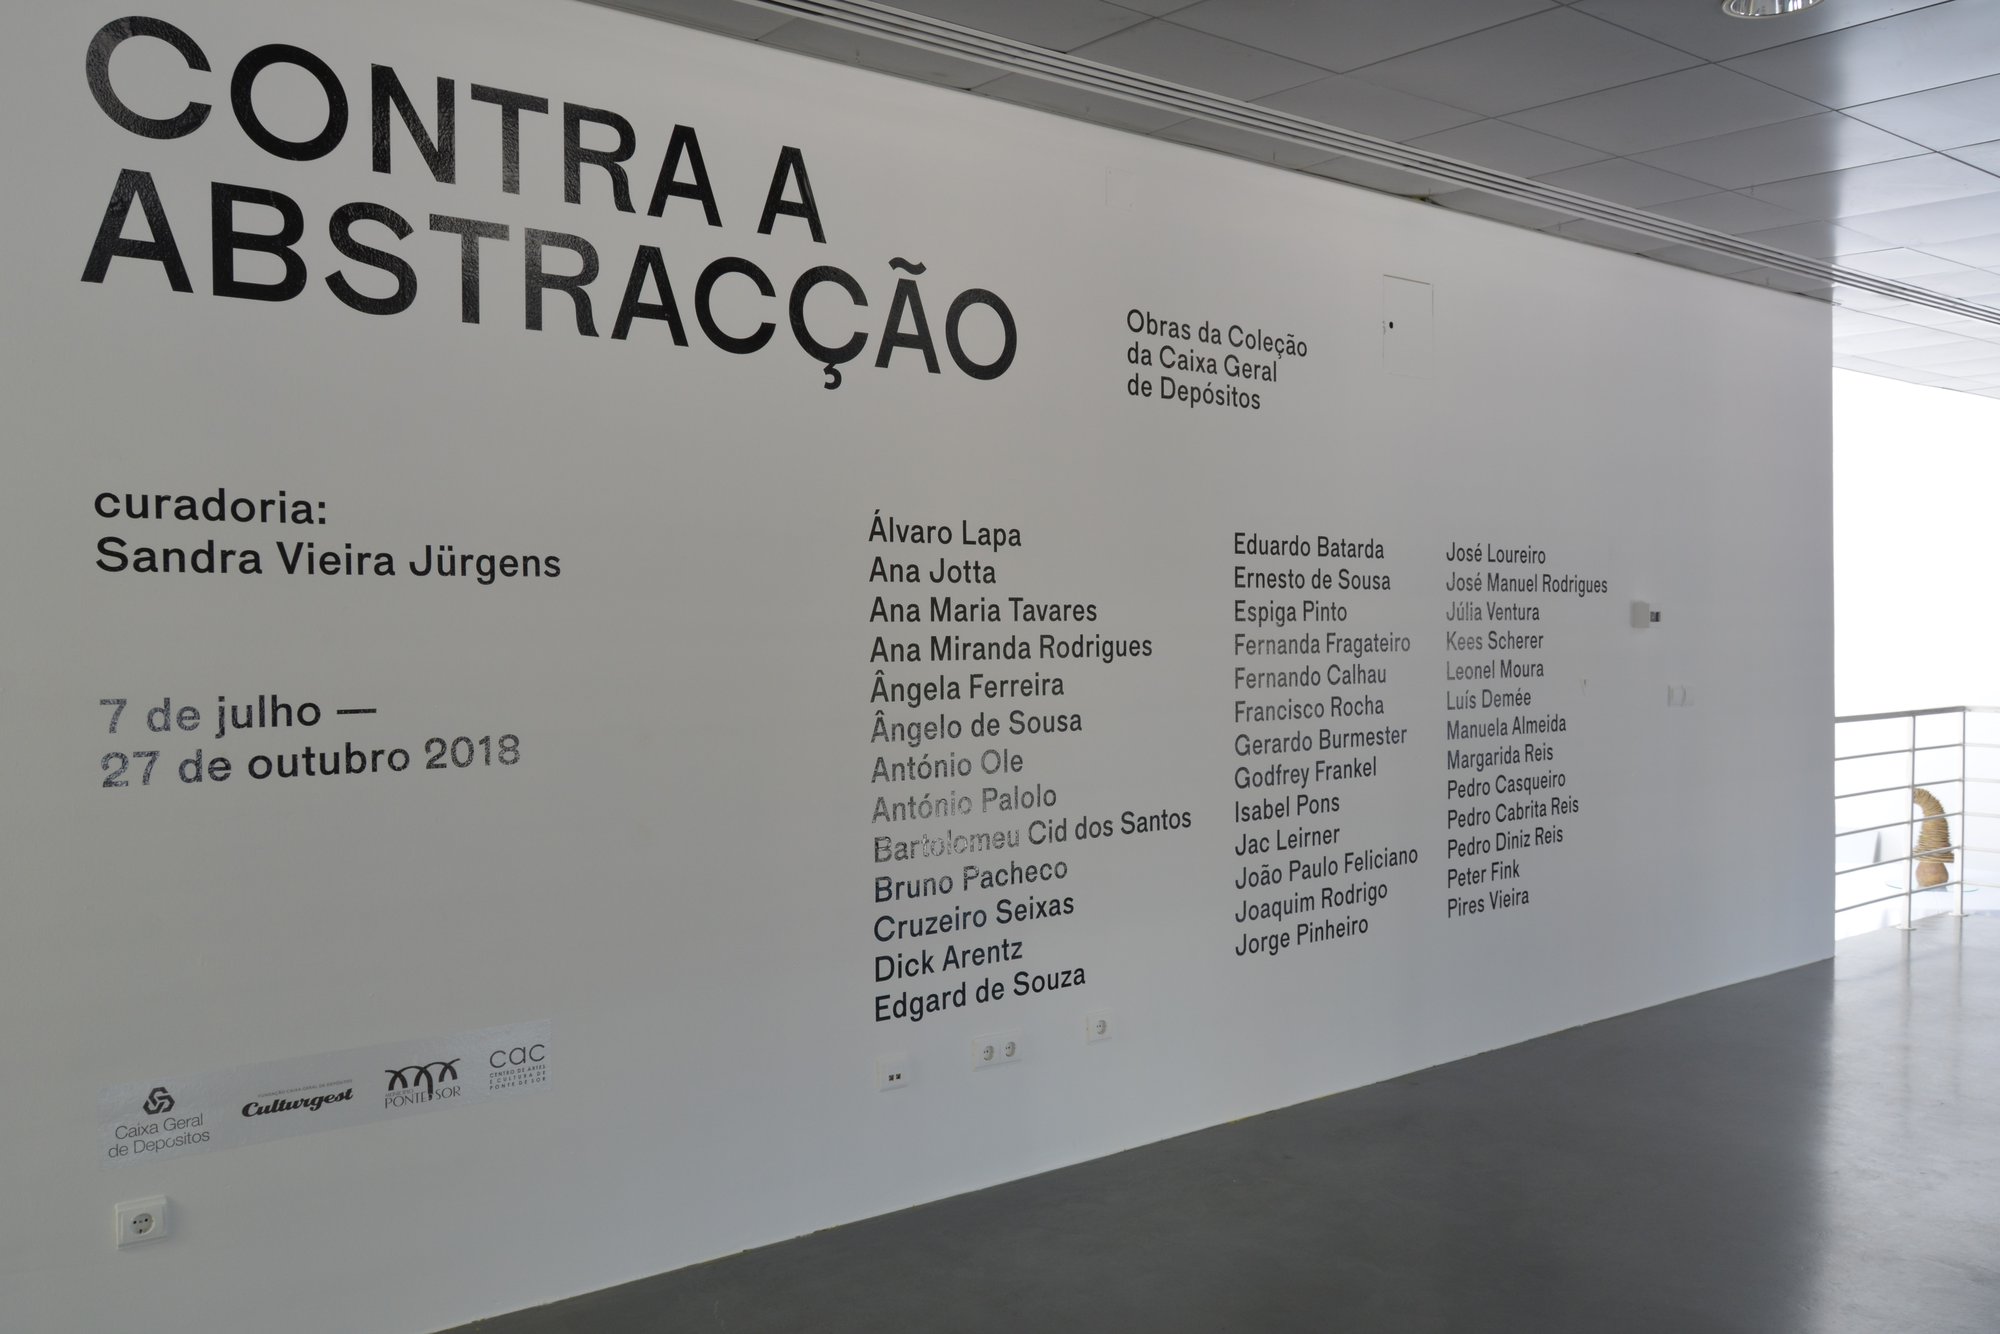 "Contra a Abstracção", Centro de Arte Oliva, São João da Madeira